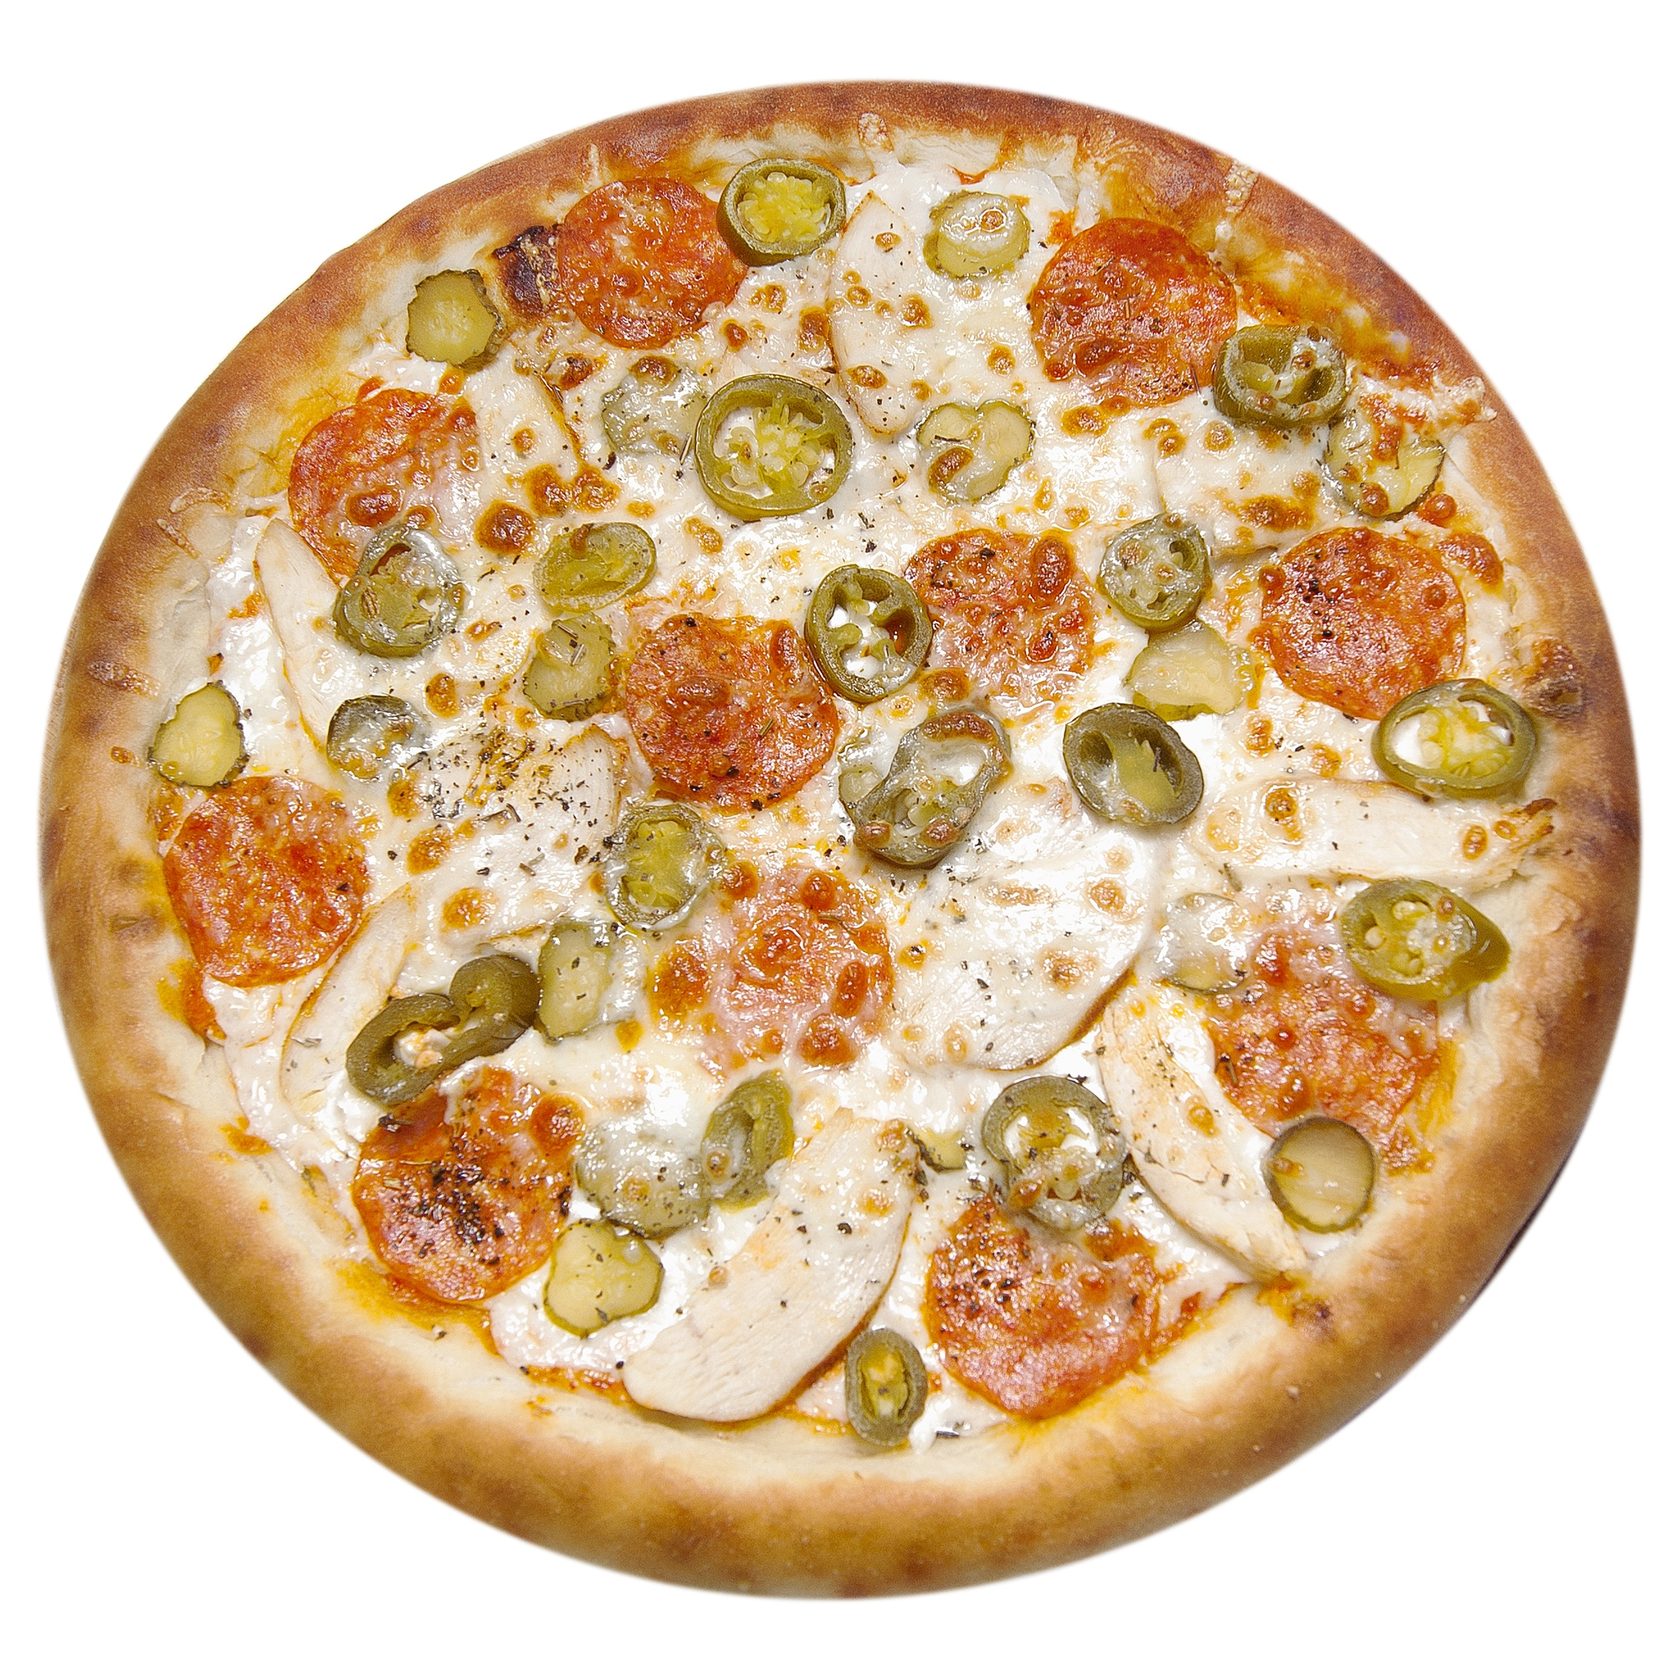 состав начинки для пиццы пепперони фото 98